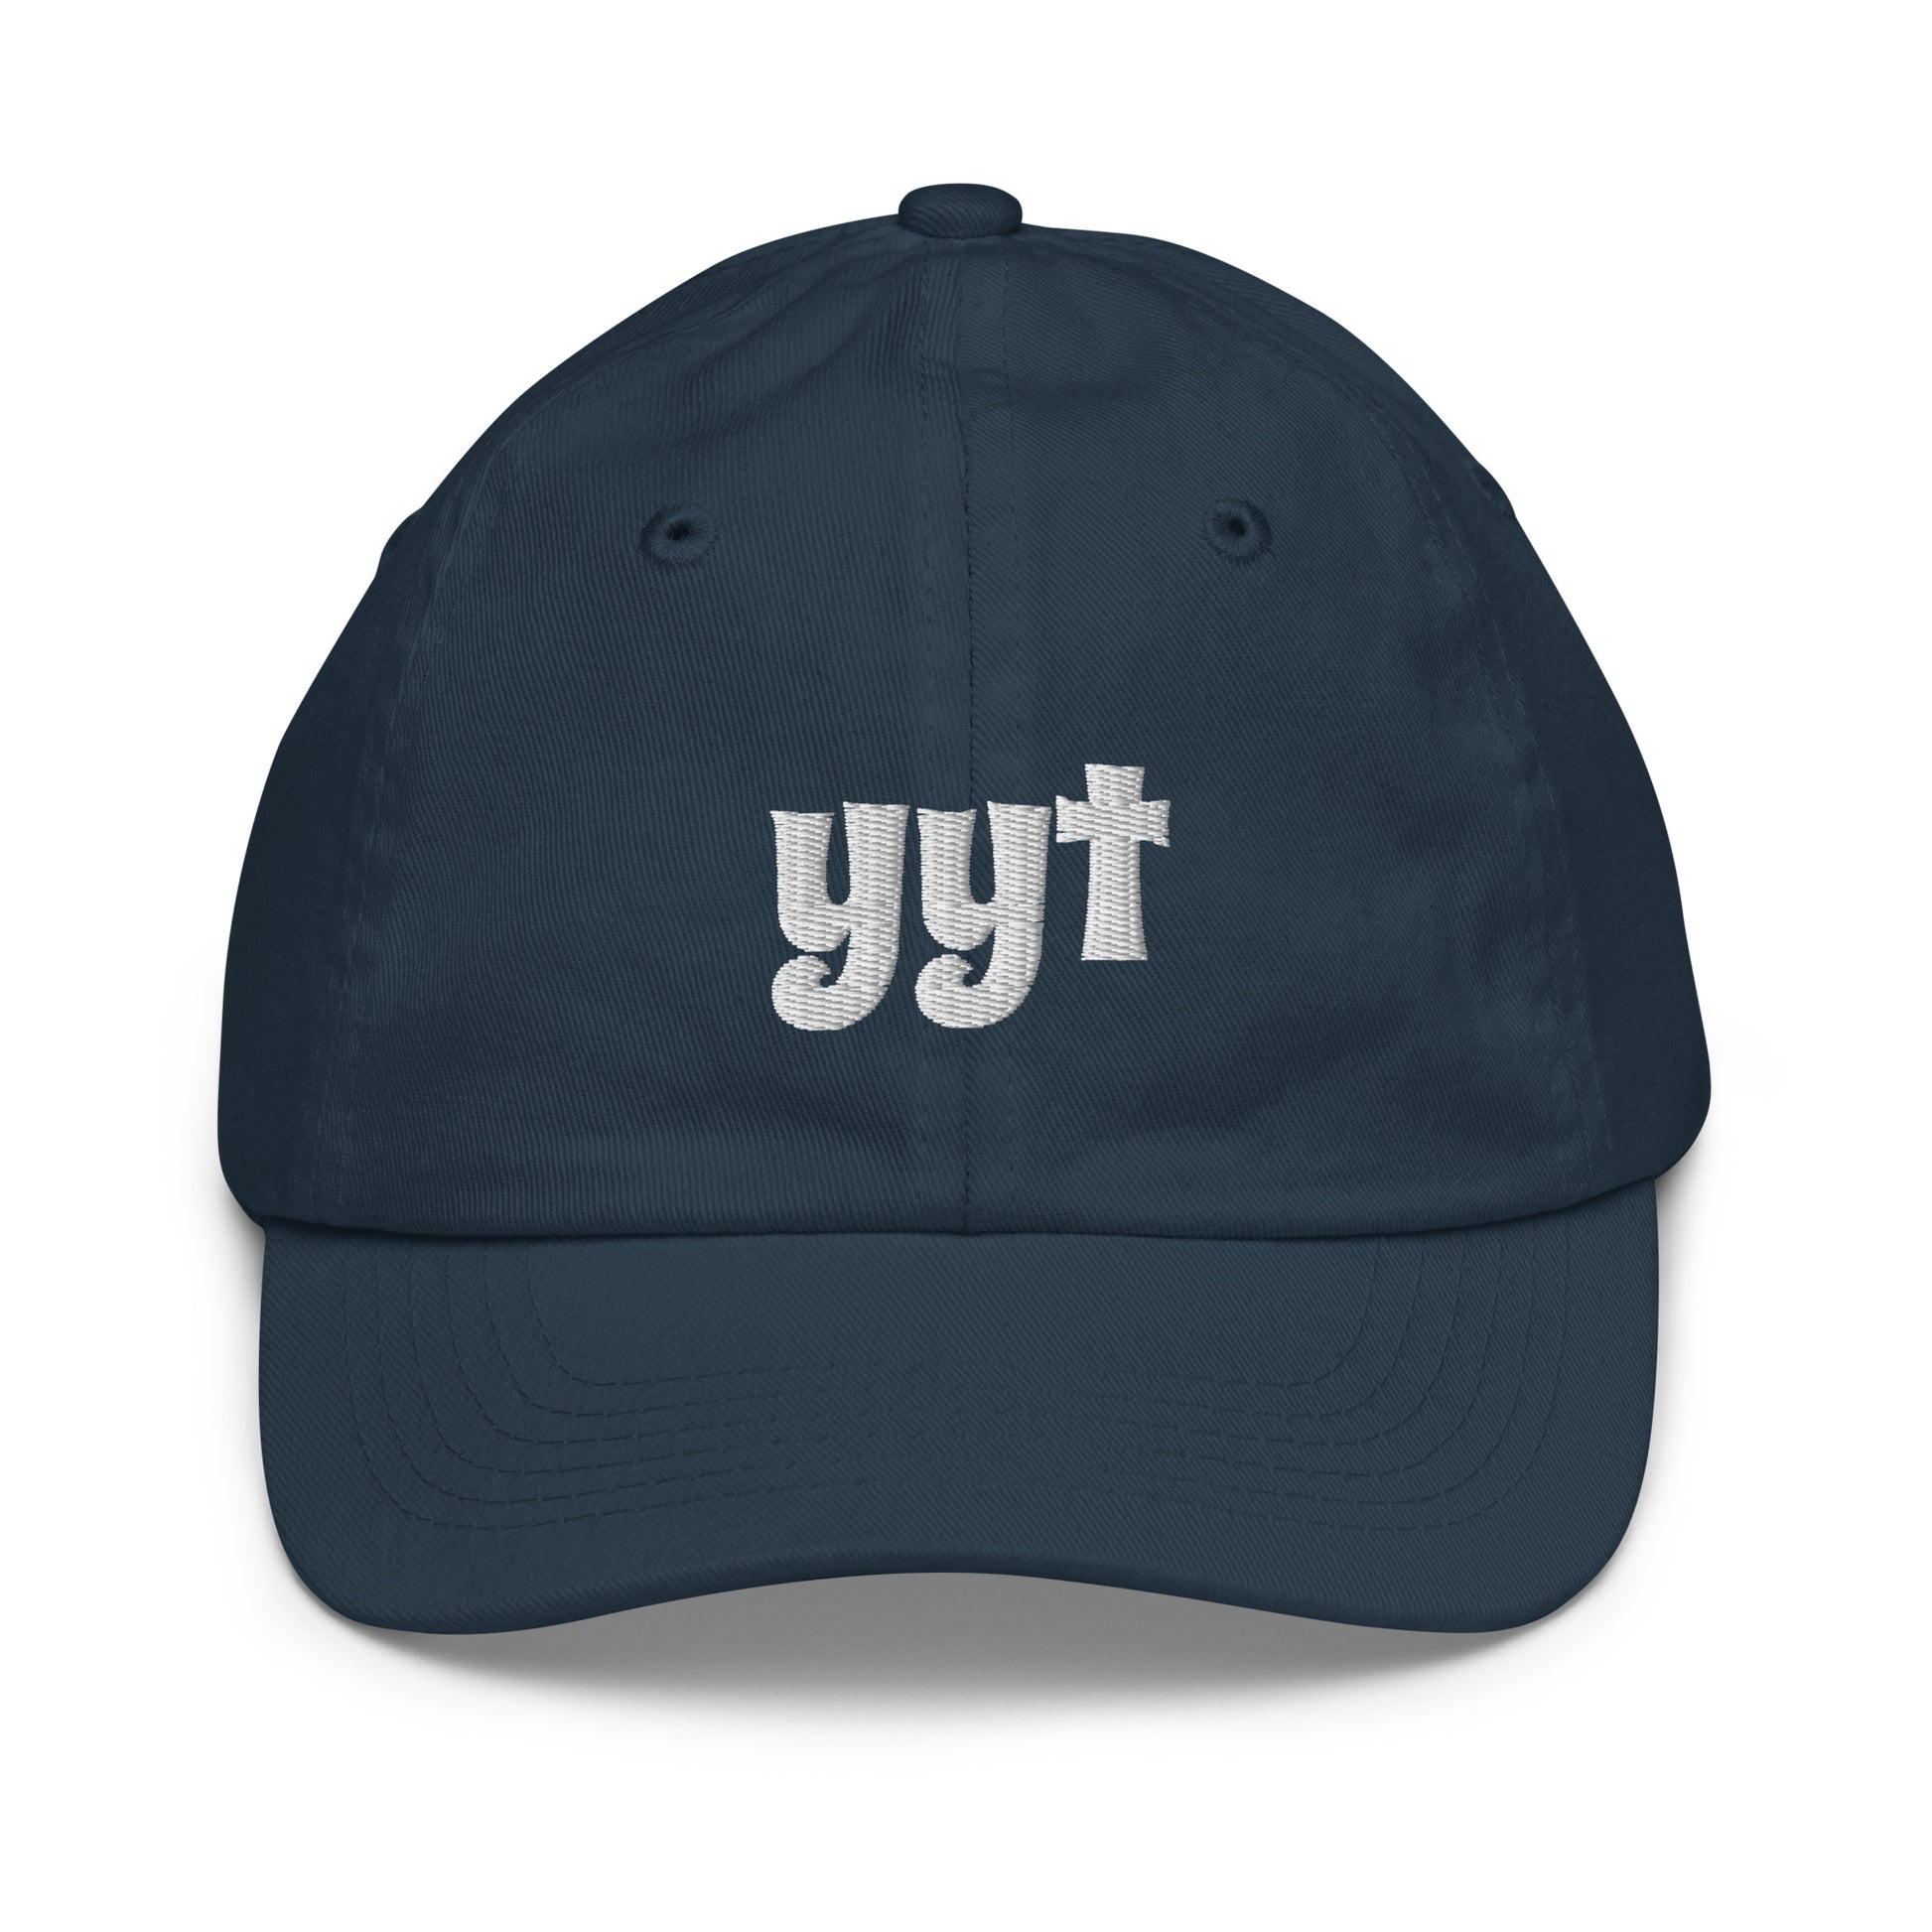 Groovy Kid's Baseball Cap - White • YYT St. John's • YHM Designs - Image 12